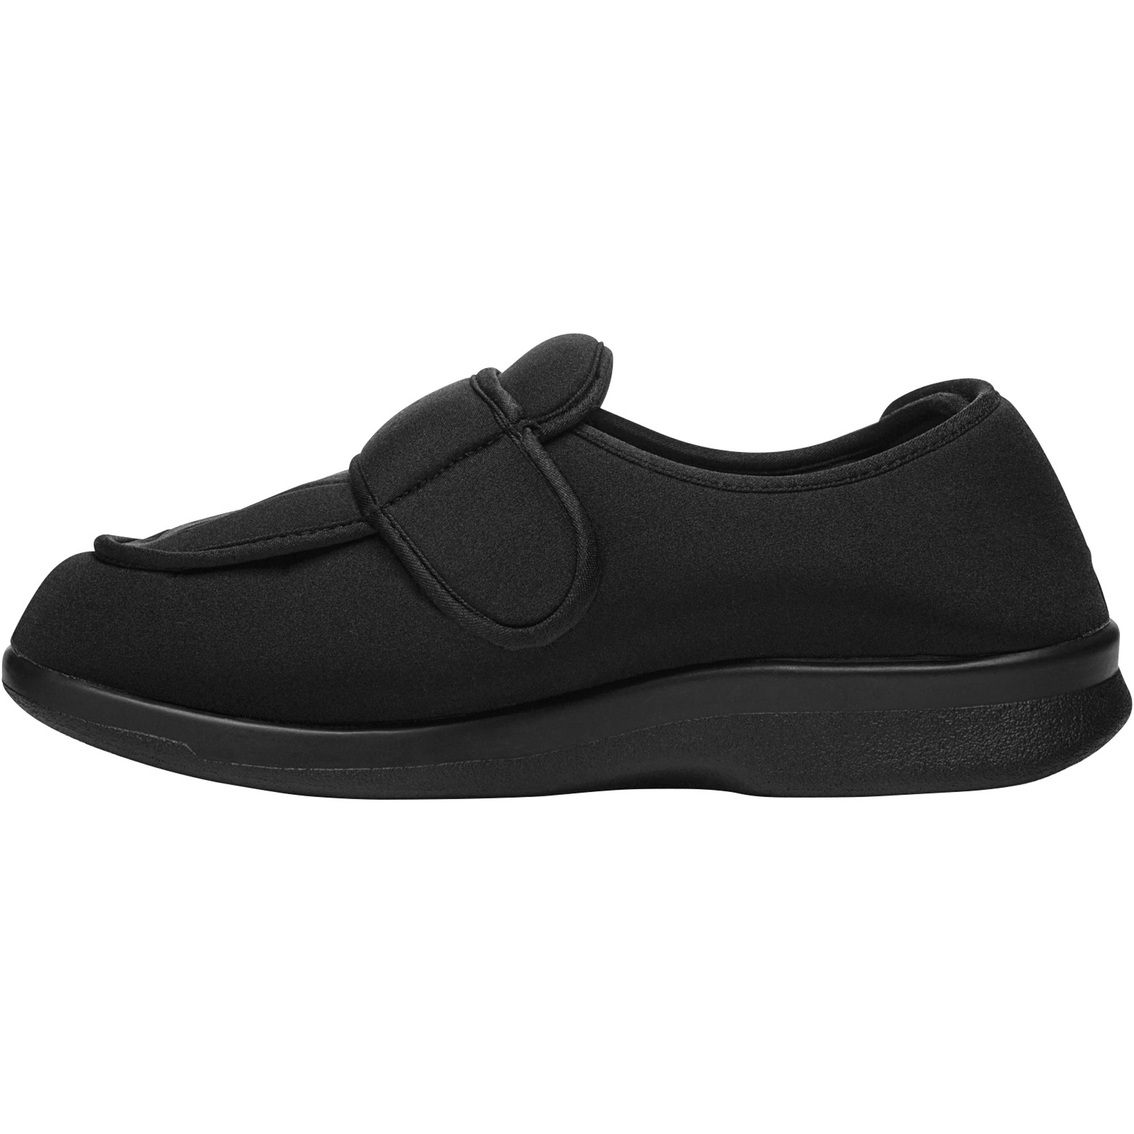 Propet Men's Cronus Comfort A5500 Shoes - Image 2 of 4